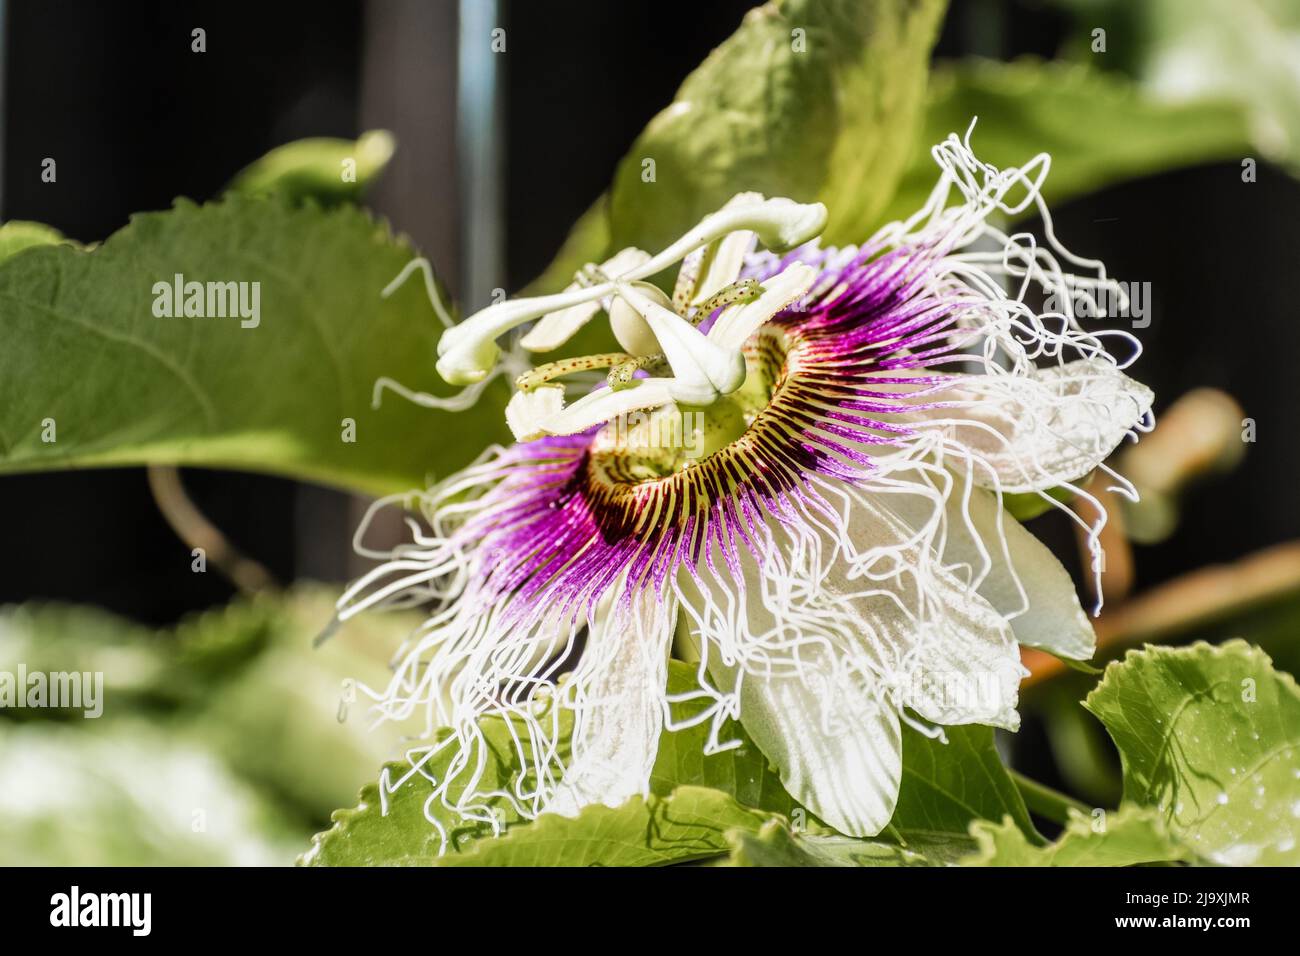 Gros plan de la fleur de fruit de la passion (Passiflora edulis) Banque D'Images